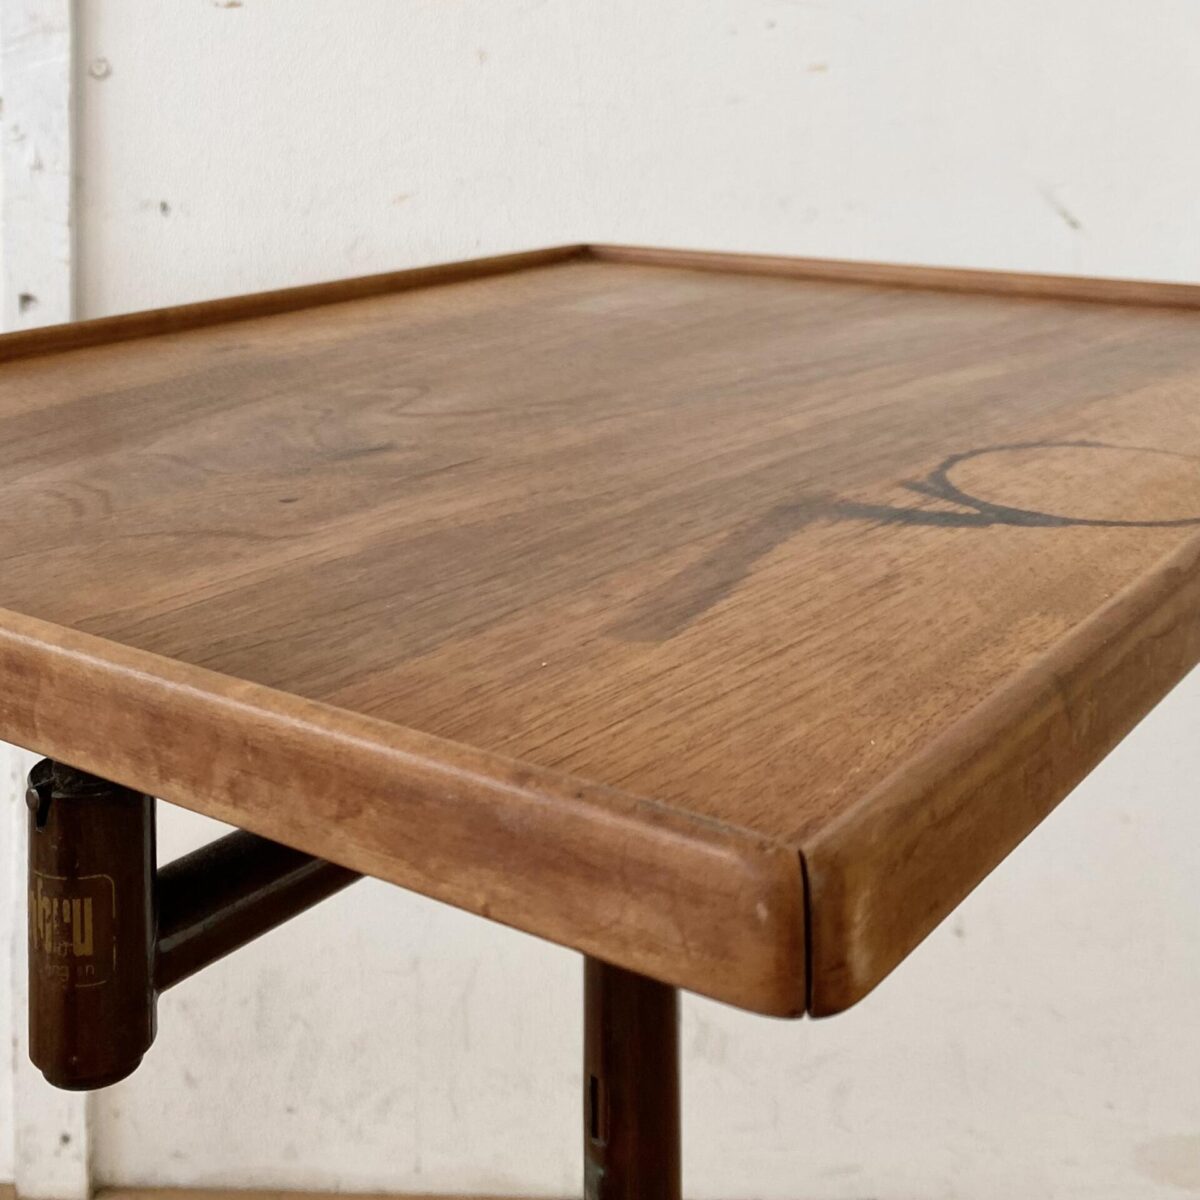 Deuxieme.shop Swiss designklassiker. Höhenverstellbarer Embru Tisch, von Georg Albert Ulysse Caruelle. Der Tisch ist höhenverstellbar von 70 bis 98cm. Die Hauptplatte ist Neigbar und misst 51.5x41.5cm. Das Metallgestell ist Kupferbrüniert, der eine fuss ist ausziehbar. Der Tisch kann vielseitig eingesetzt werden, als Betttisch, Sofa Beistelltisch, Notenständer oder als kleiner Arbeitstisch. Das Nussbaum furnierte Tischblatt hat eine kleine Luftblase bei genauer Betrachtung, ansonsten in schönem Vintage Zustand mit ein paar kleinen Wasserflecken und dem Tintenfass Ring. 